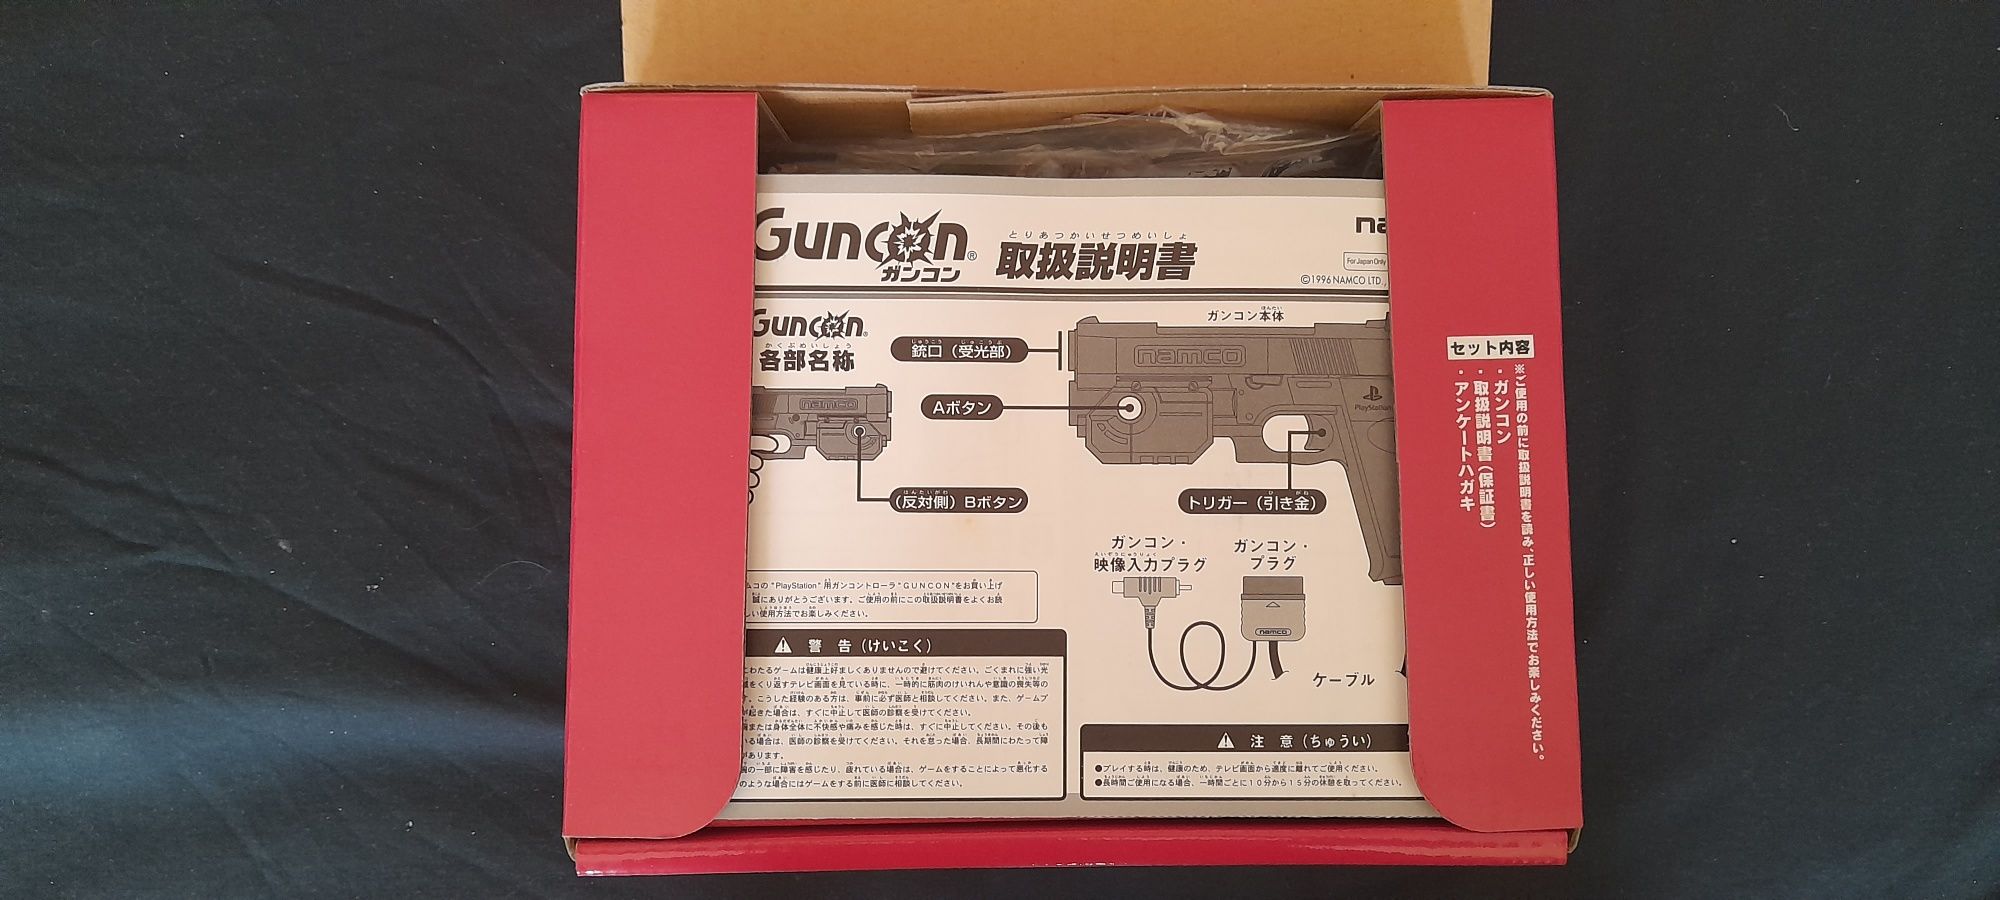 GunCon Namco - PS1 e PS2